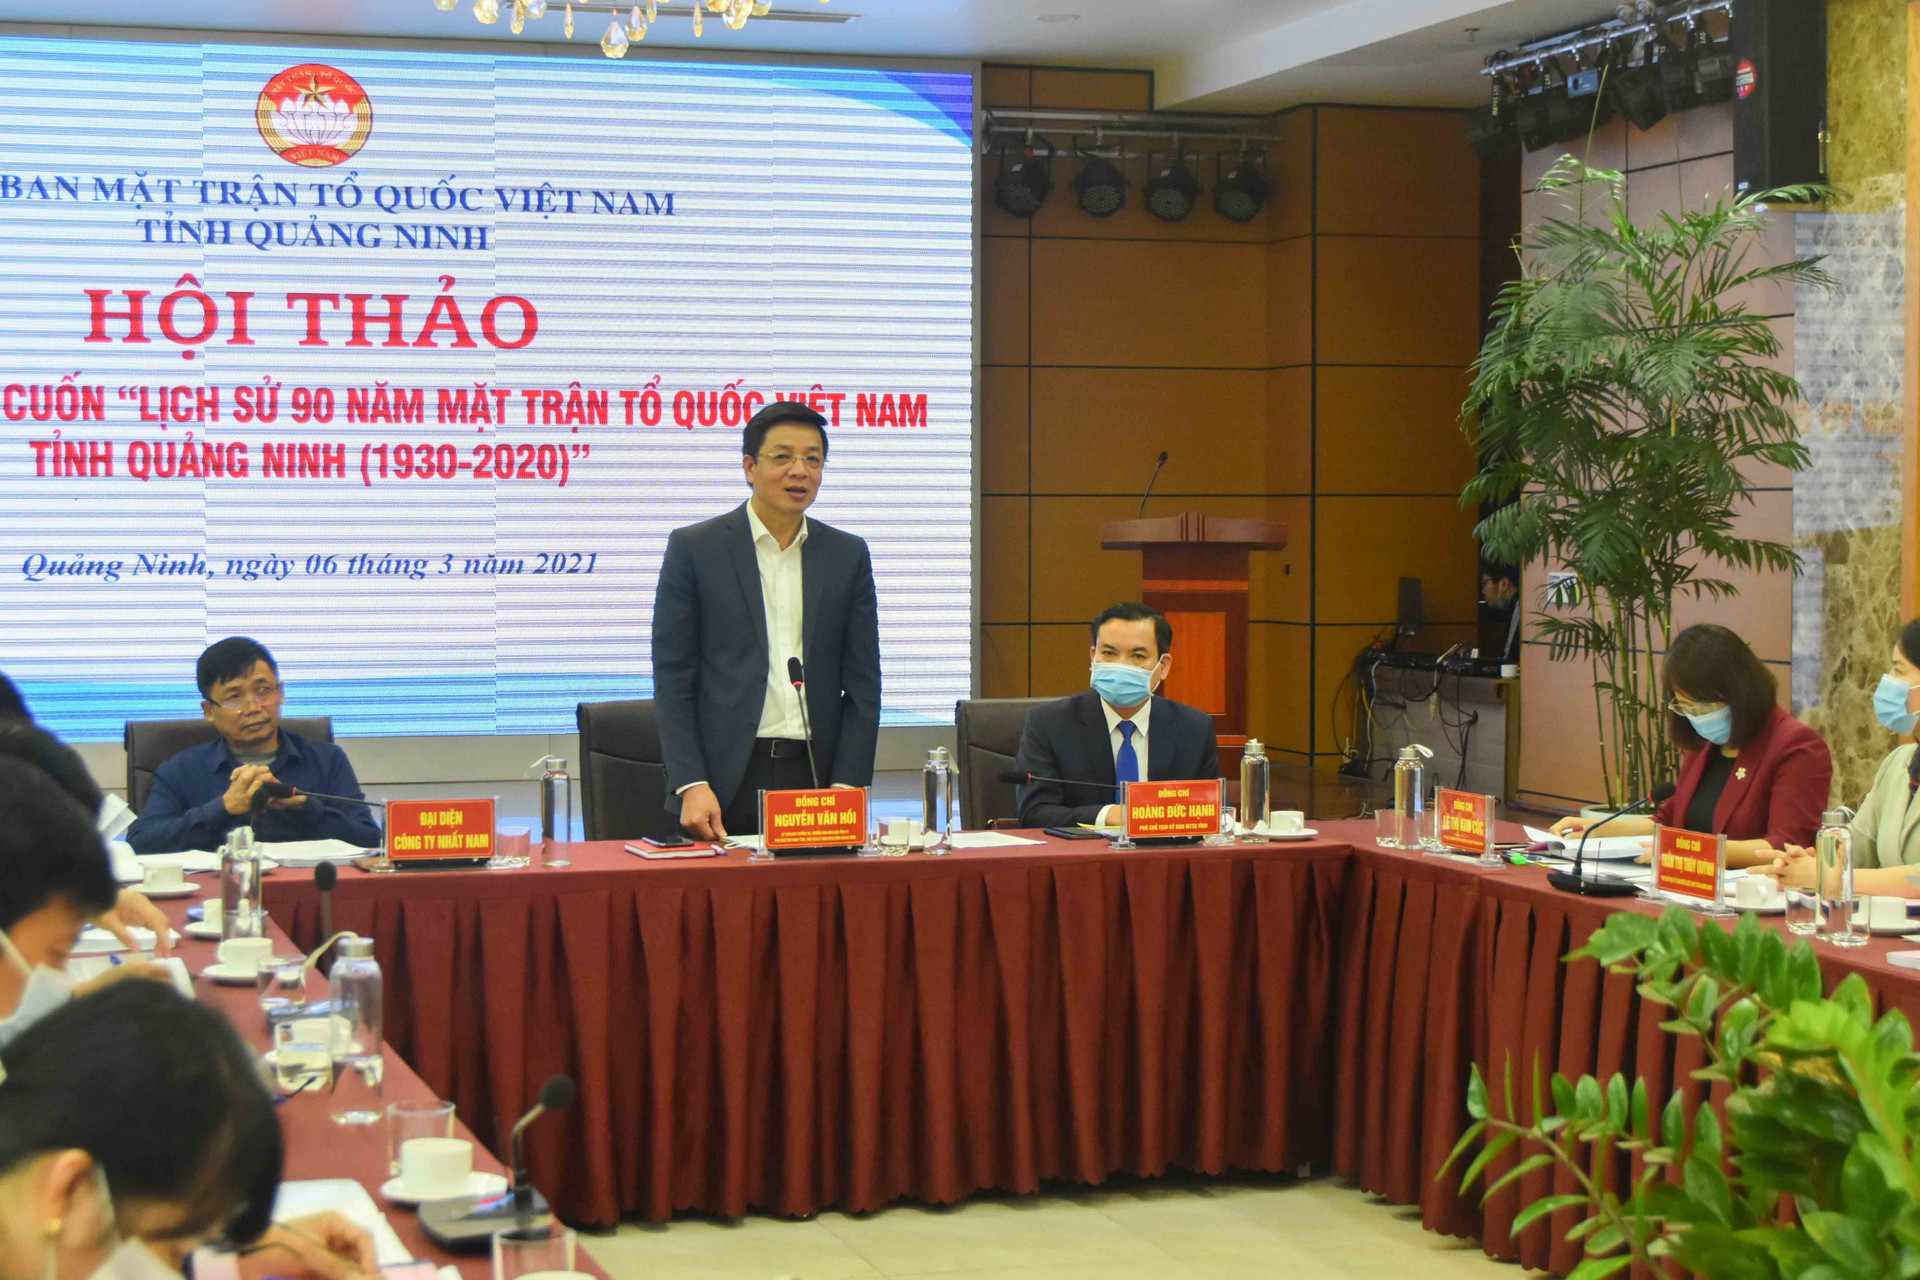 Đồng chí Nguyễn Văn Hồi, Trưởng Ban Dân vận Tỉnh ủy, Phó Chủ tịch HĐND tỉnh, Chủ tịch Ủy ban MTTQ tỉnh, phát biểu khai mạc hội thảo.